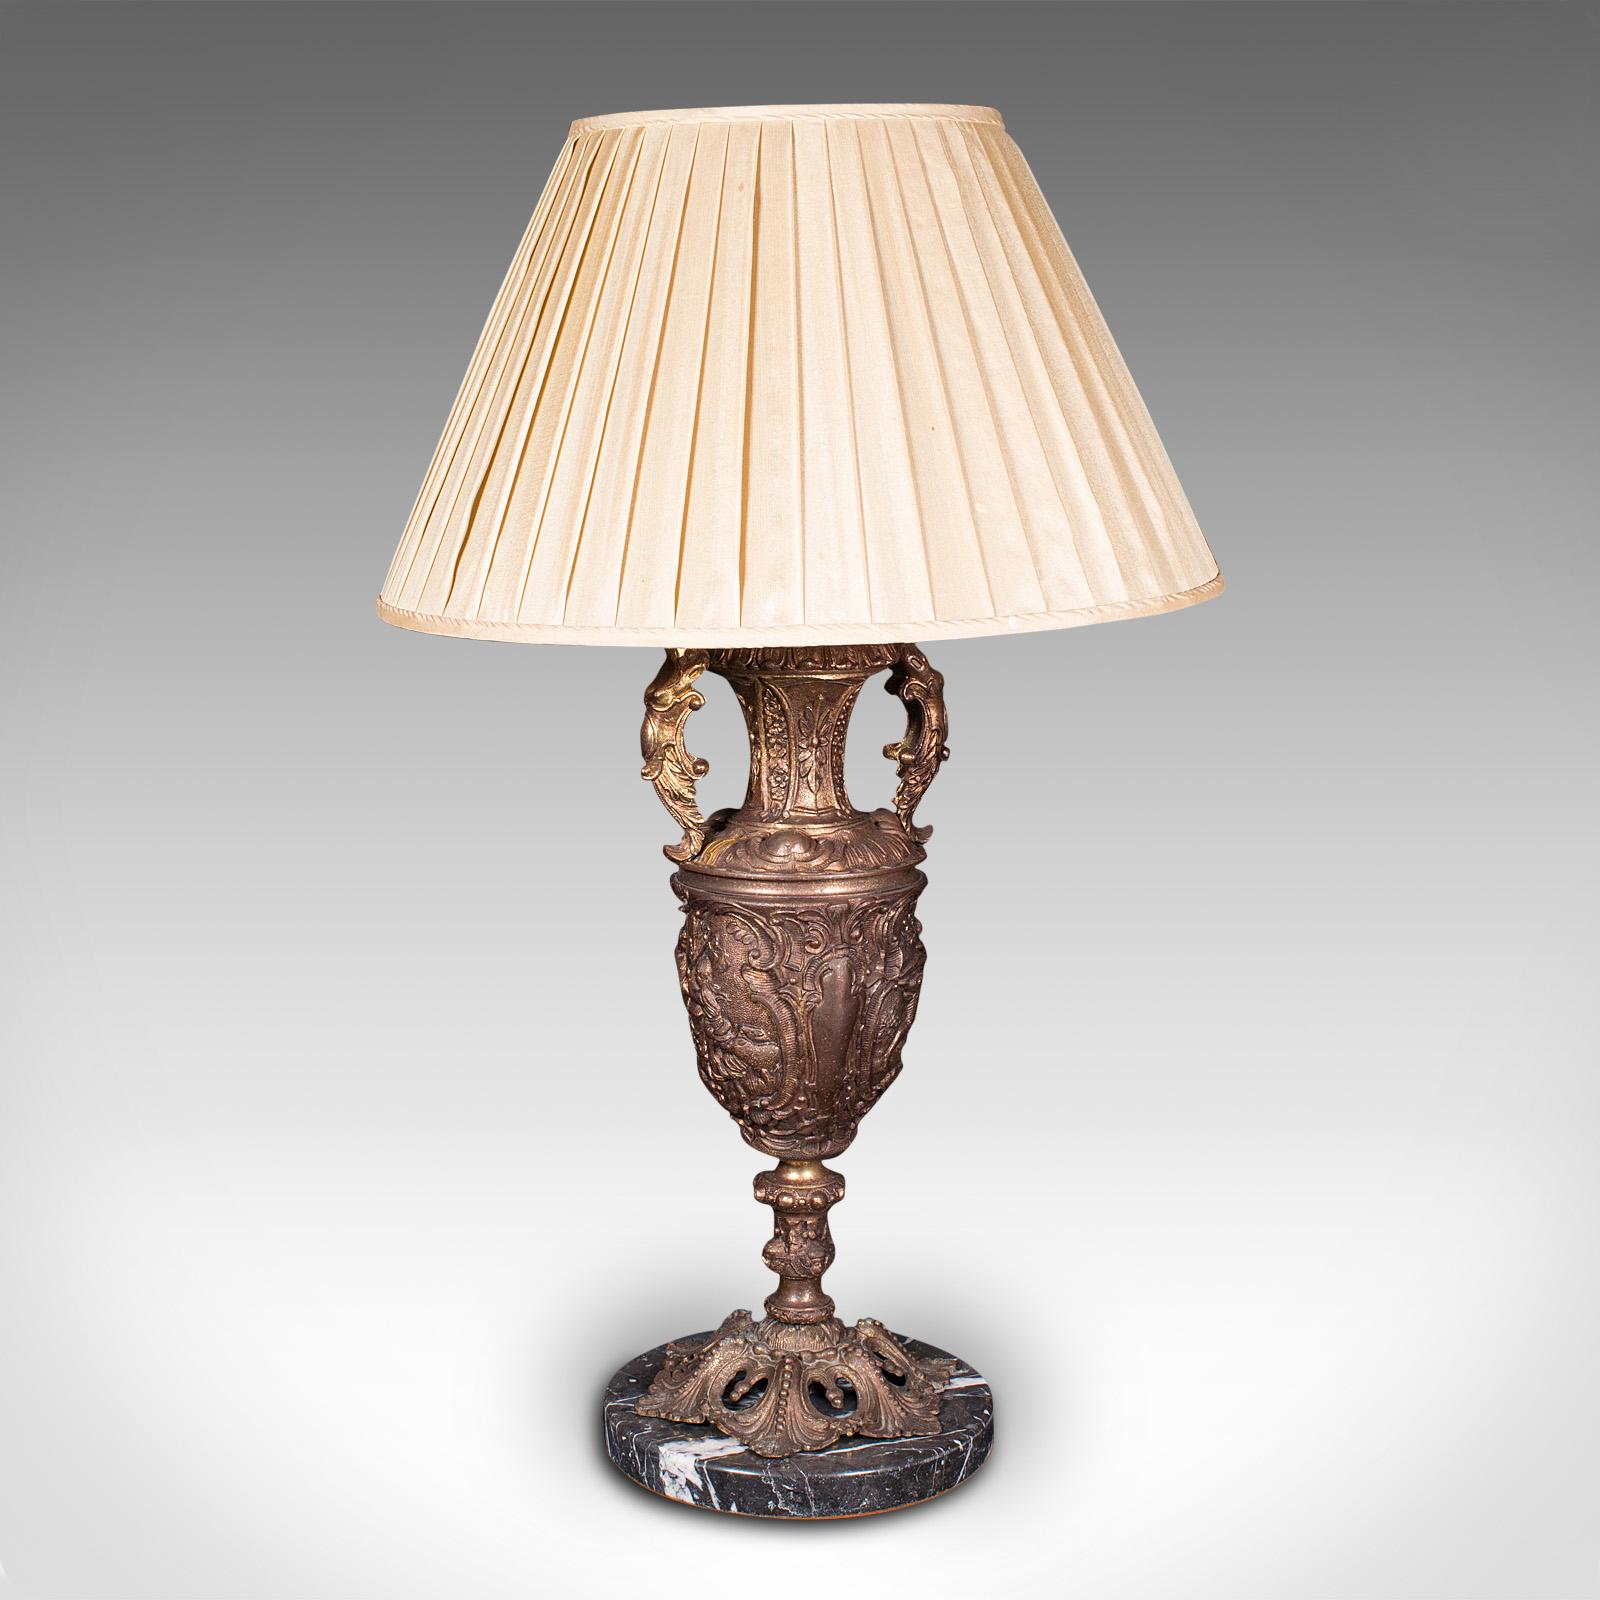 Il s'agit d'une grande lampe d'appoint ancienne. Lampe de table italienne en métal doré et marbre, datant de la fin de la période victorienne, vers 1900.

Remarquable et substantiel, avec un superbe attrait décoratif
Présentant une patine